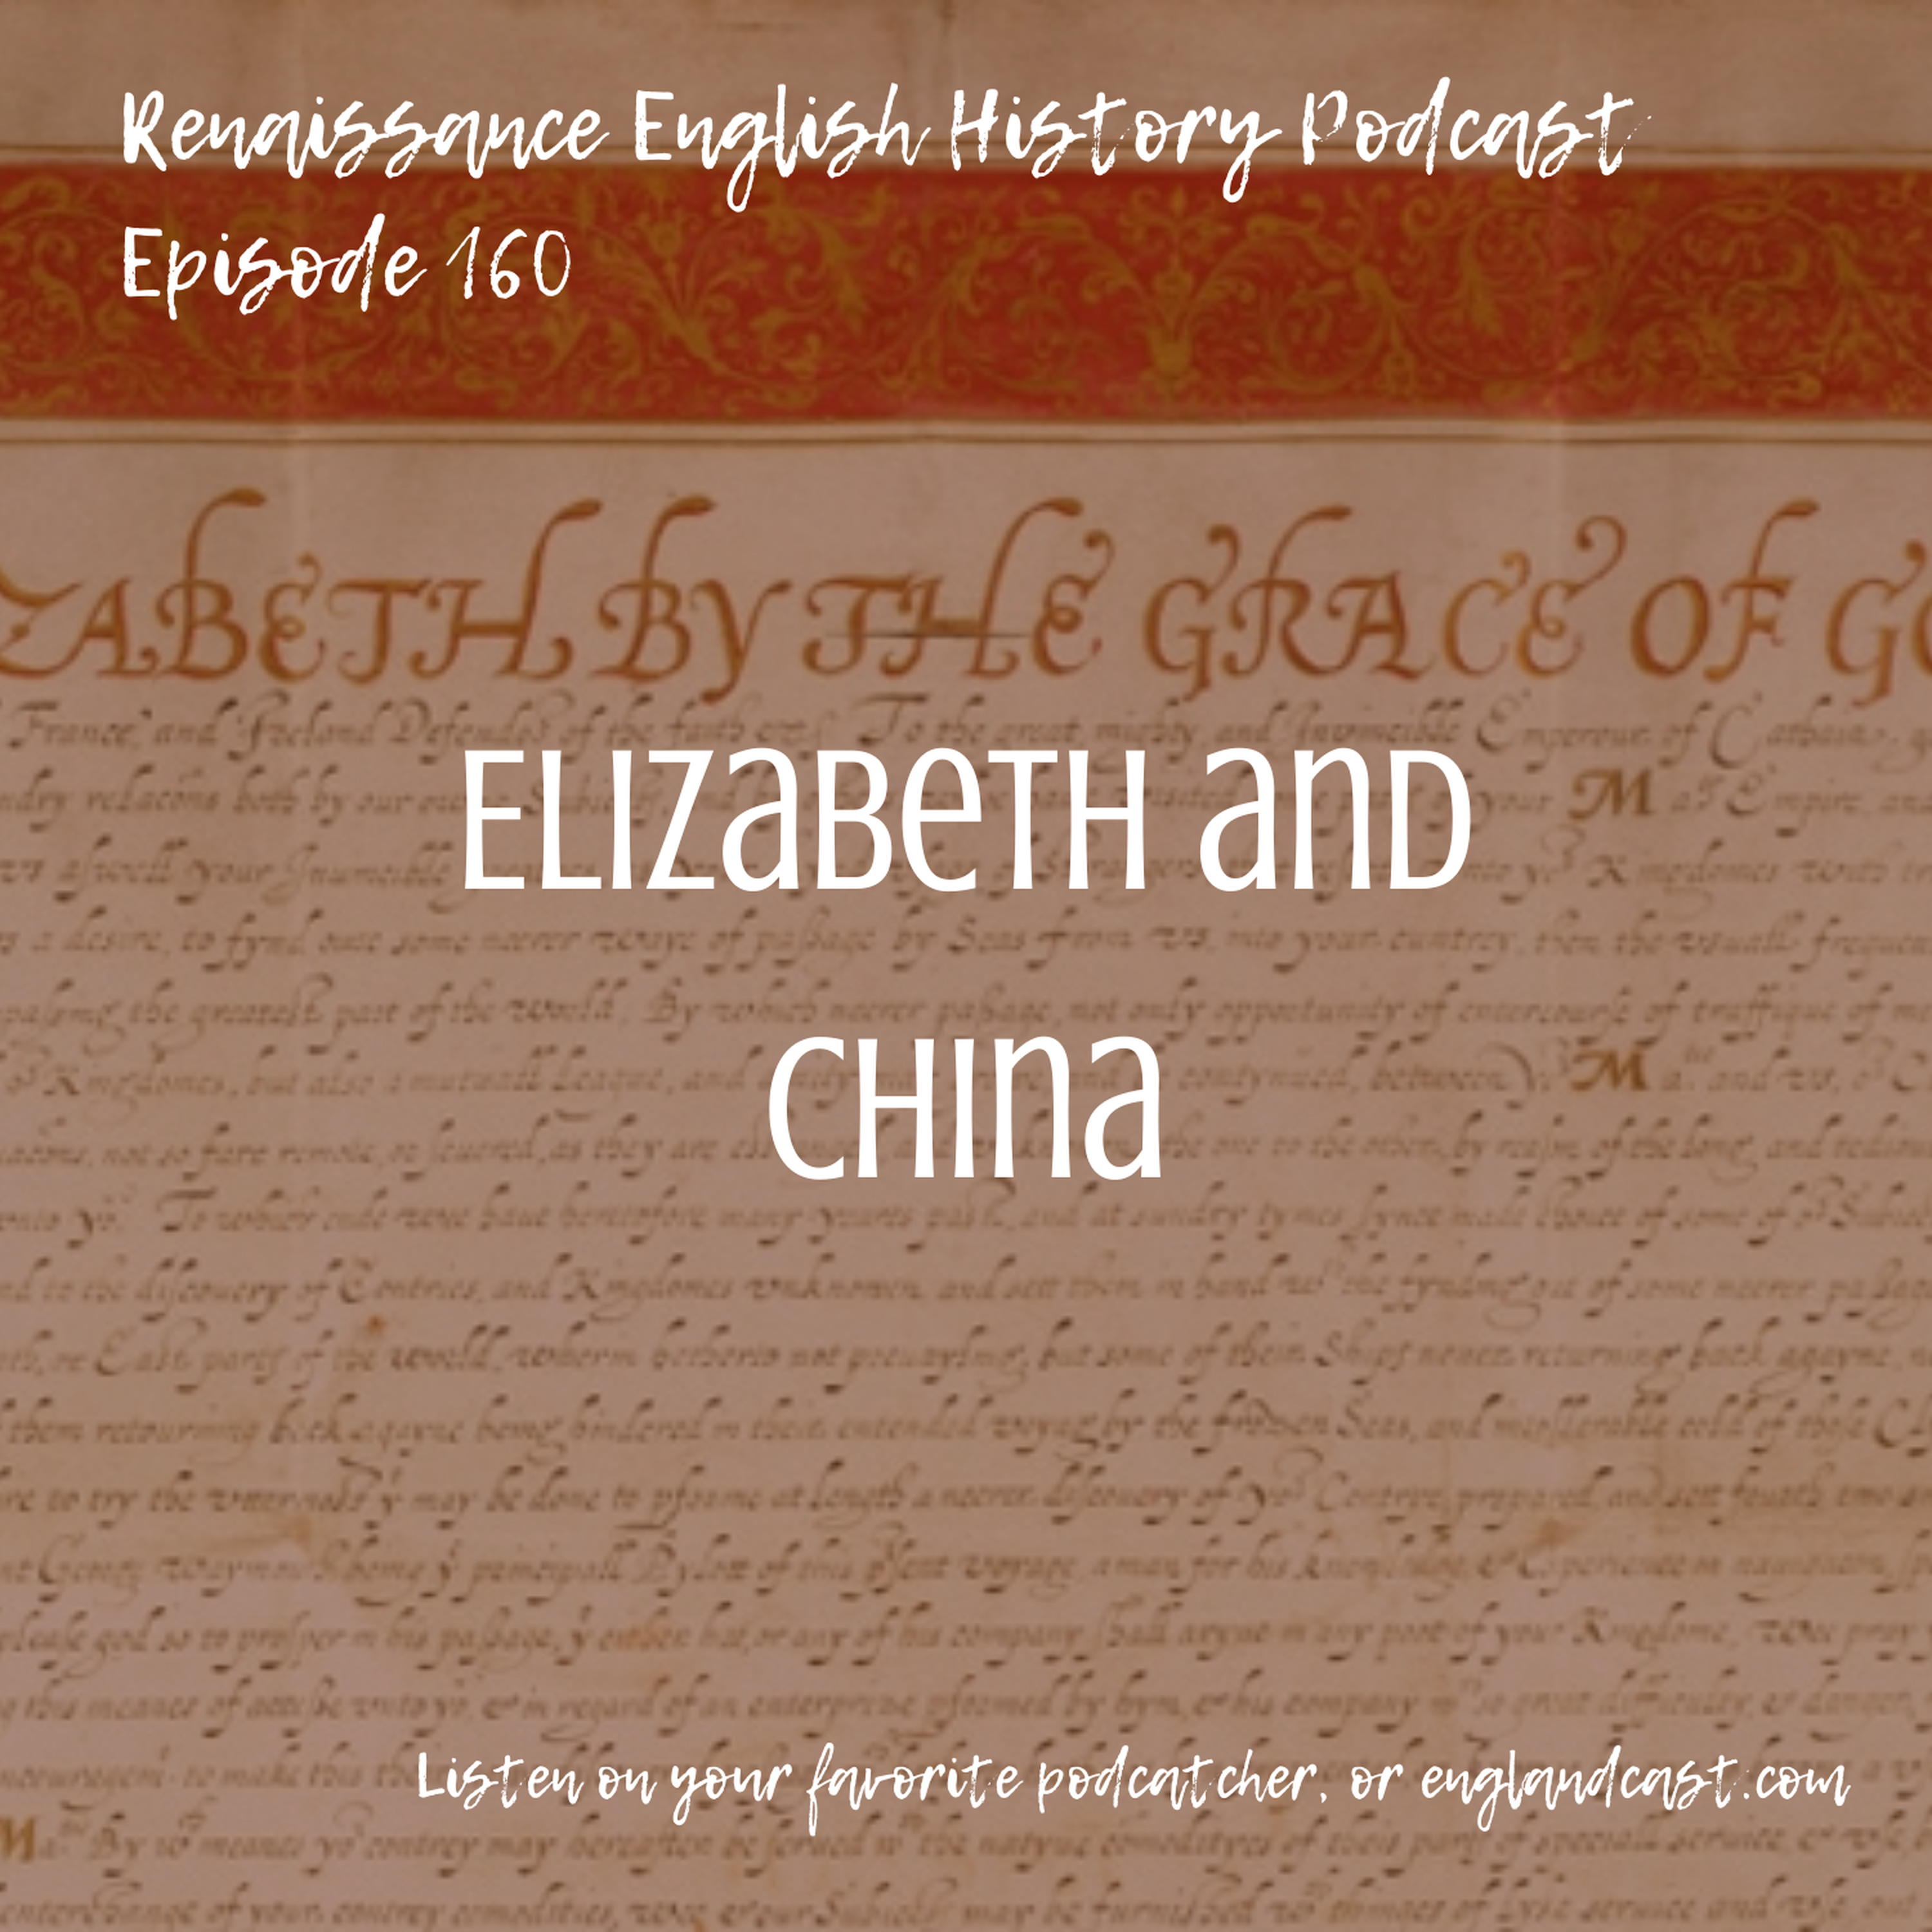 Episode 160: Elizabeth and China